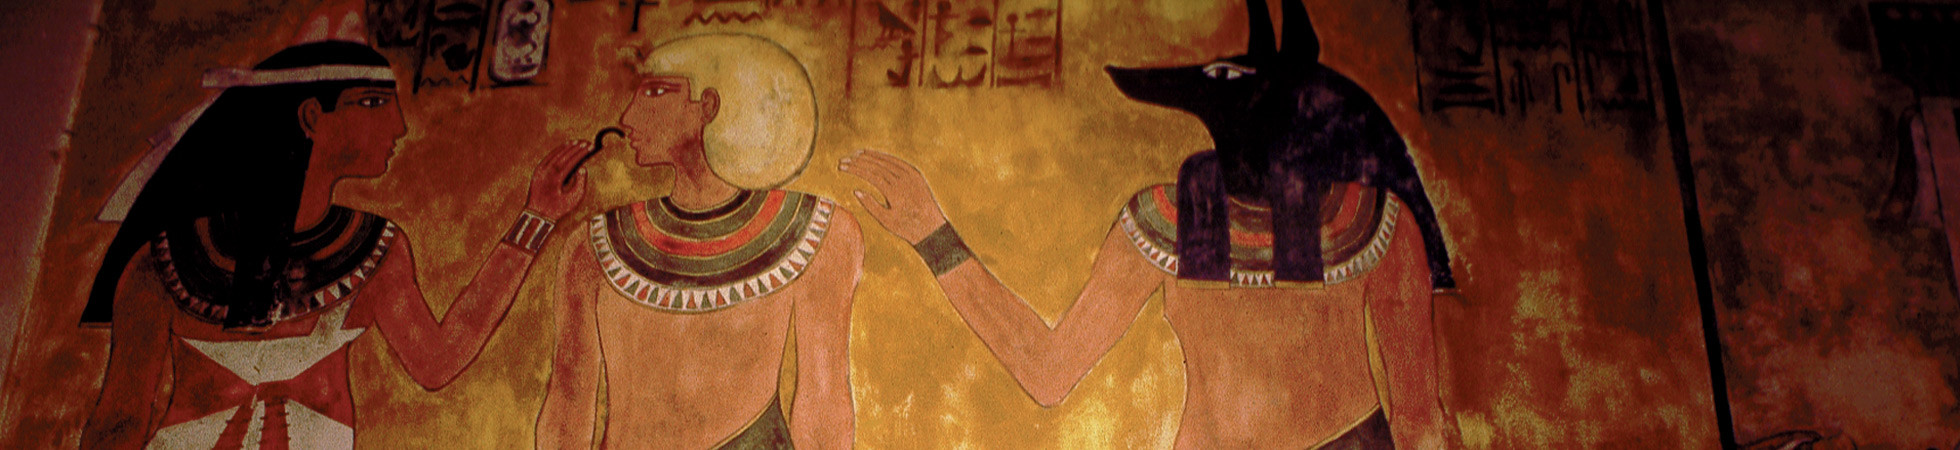 Was Tutankhamun Murdered